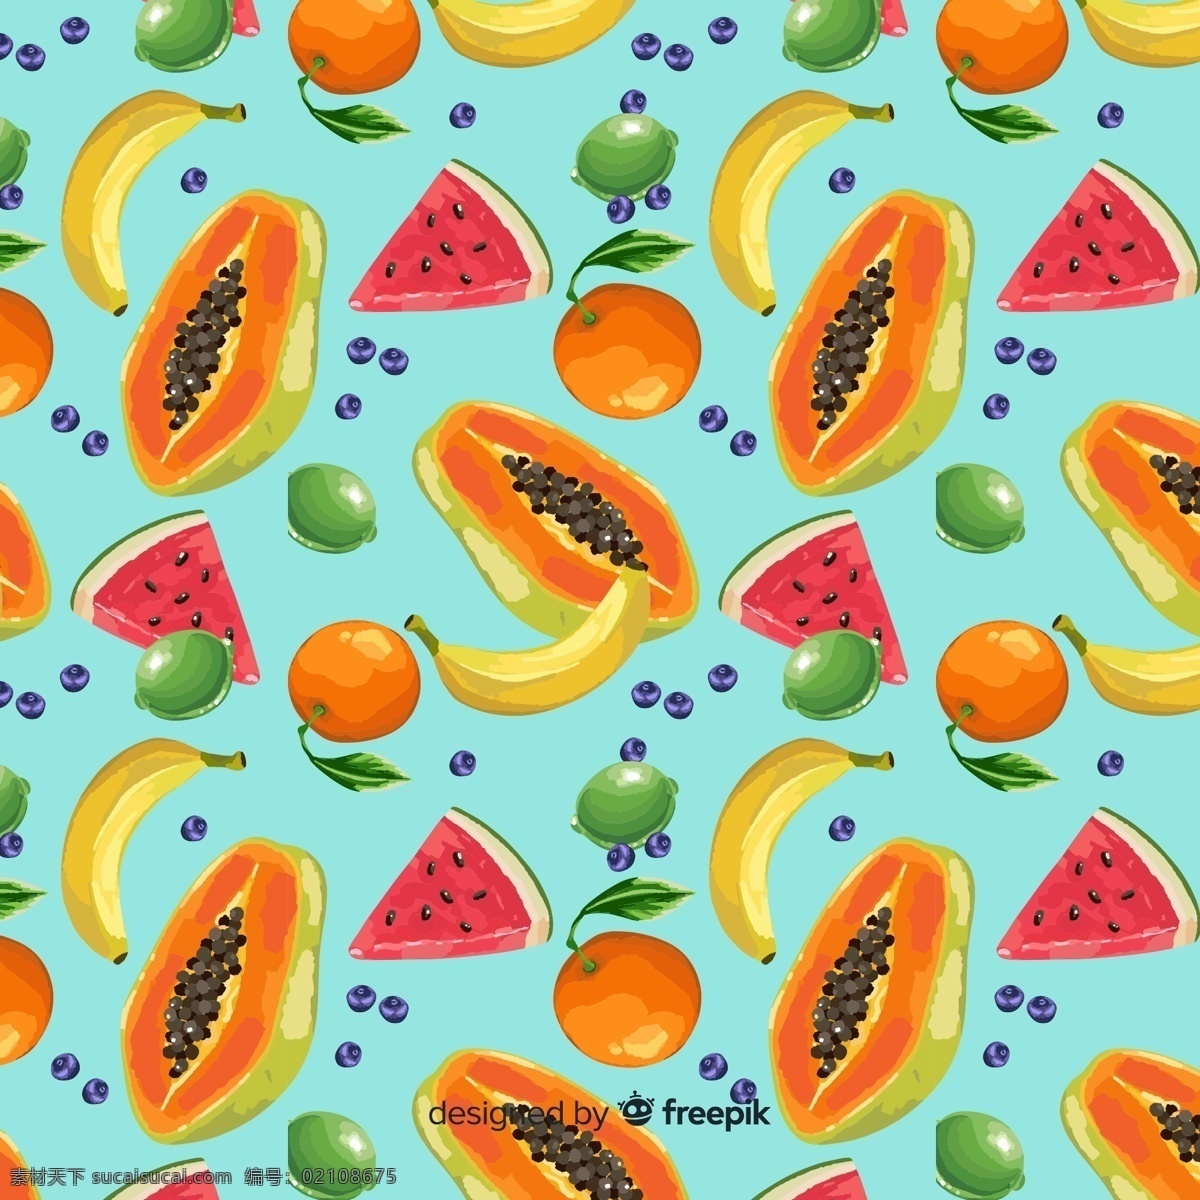 水果 无缝 拼接 图 无缝拼接 木瓜 香蕉 橘子 柠檬 青橘 蓝莓 水果拼接 果盘 底纹边框 背景底纹